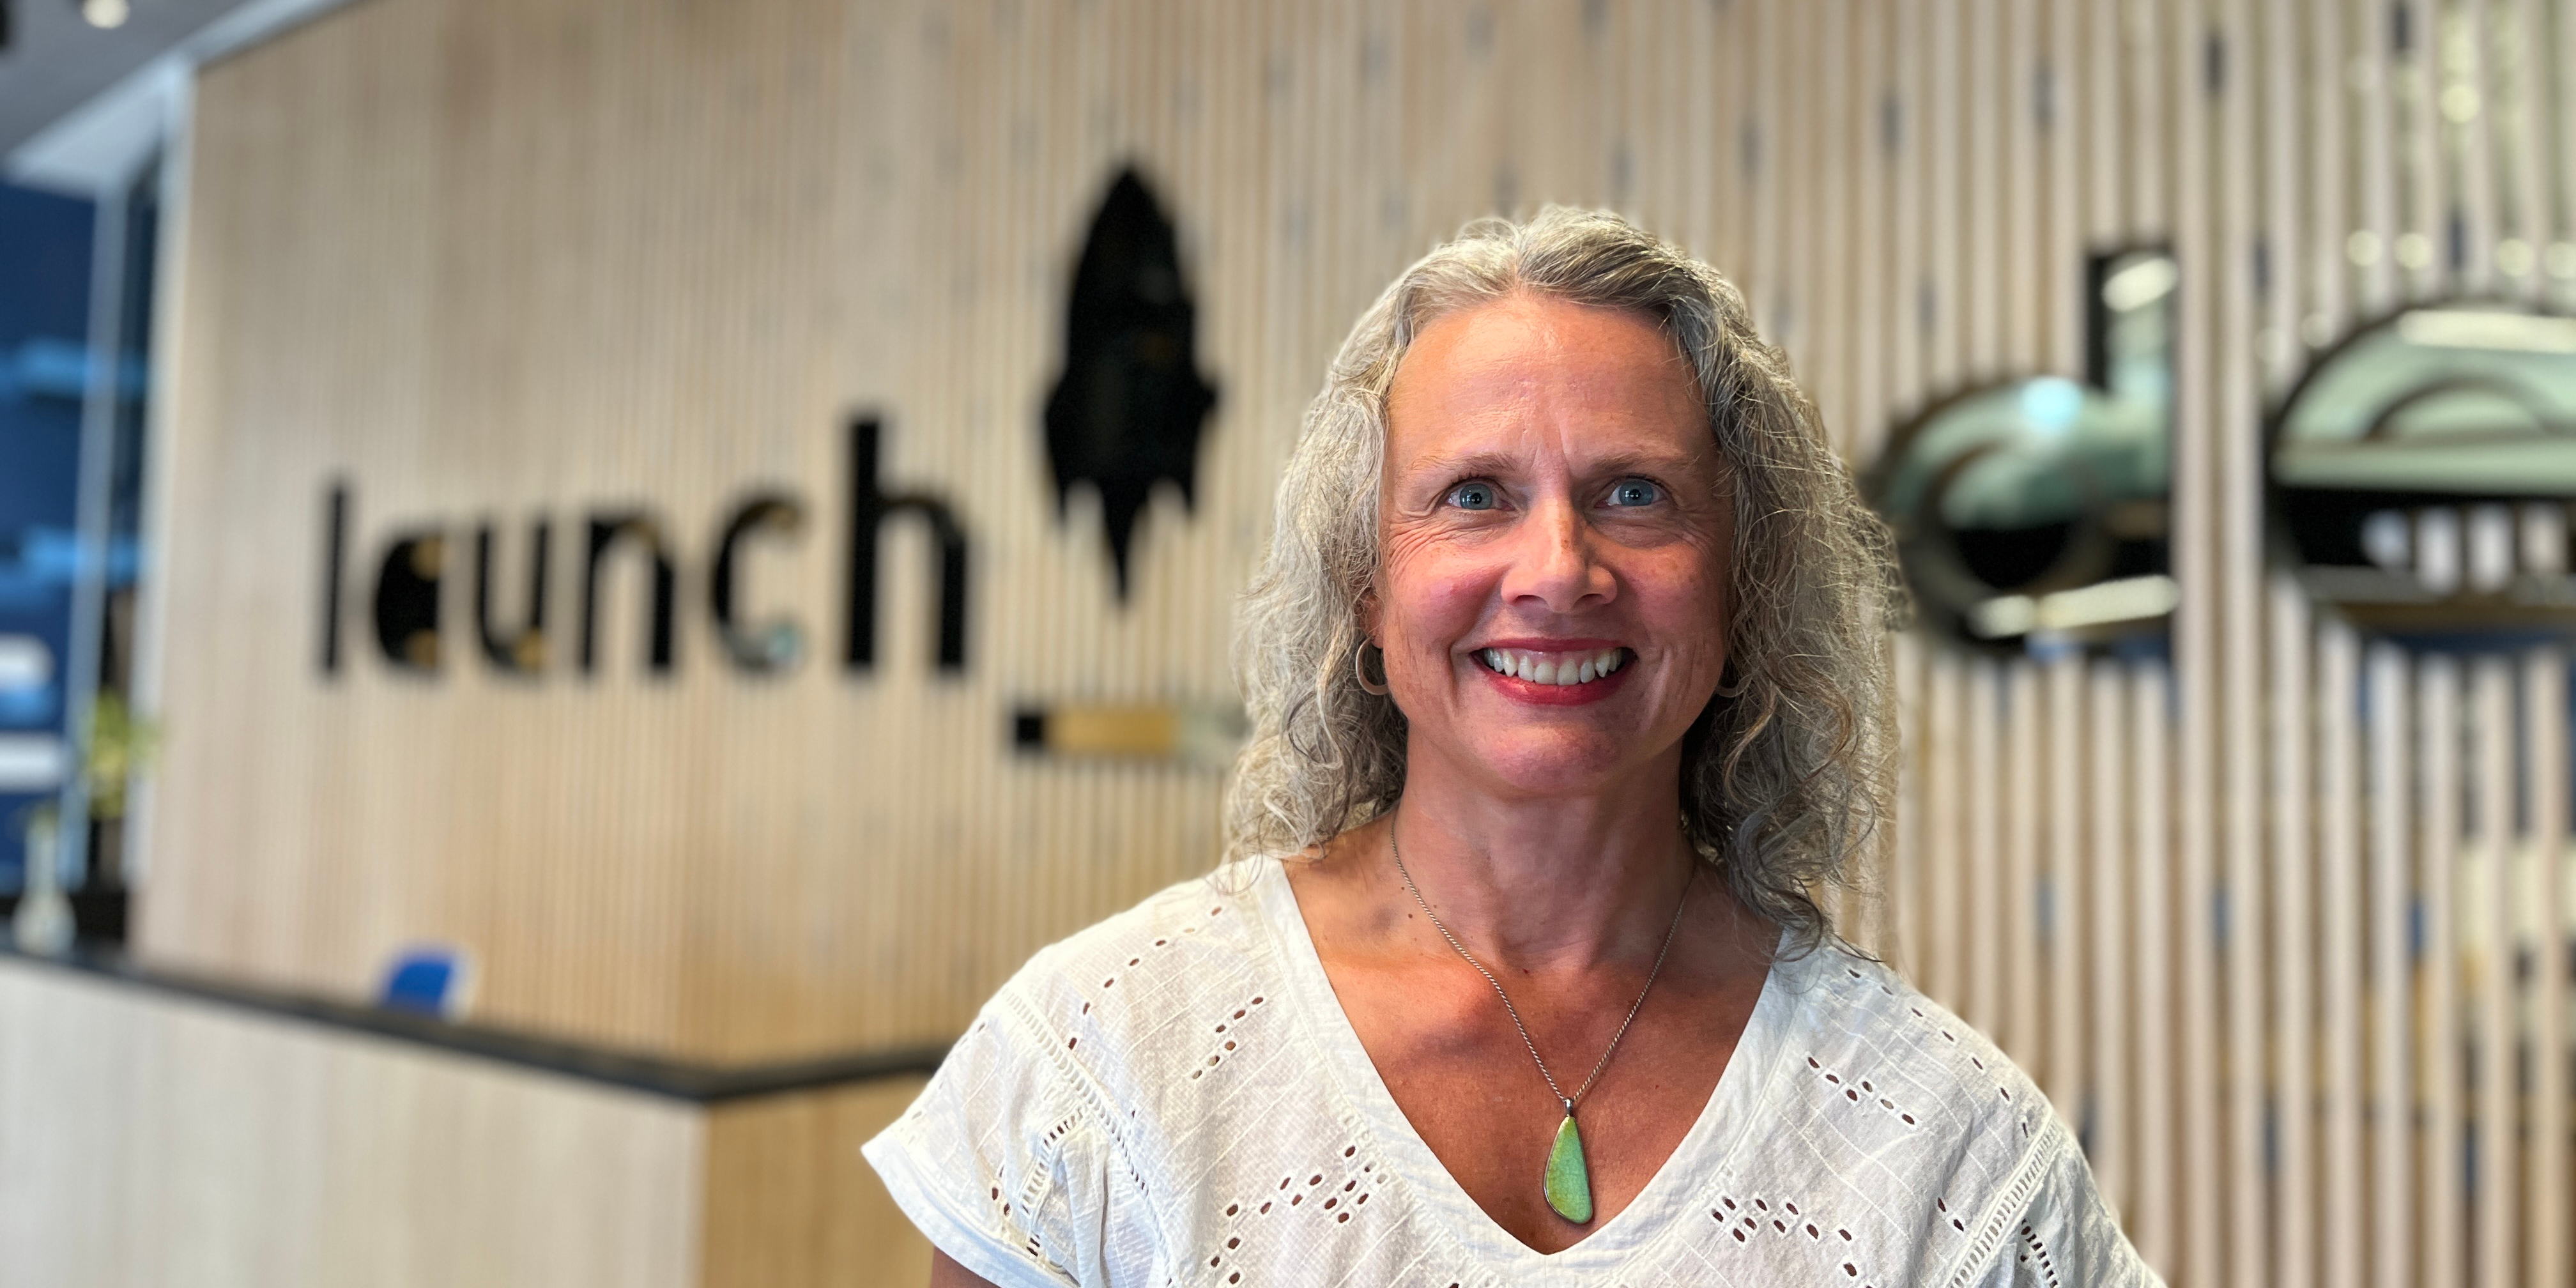 Meet Sarah, LaunchCode’s Interim Executive Director